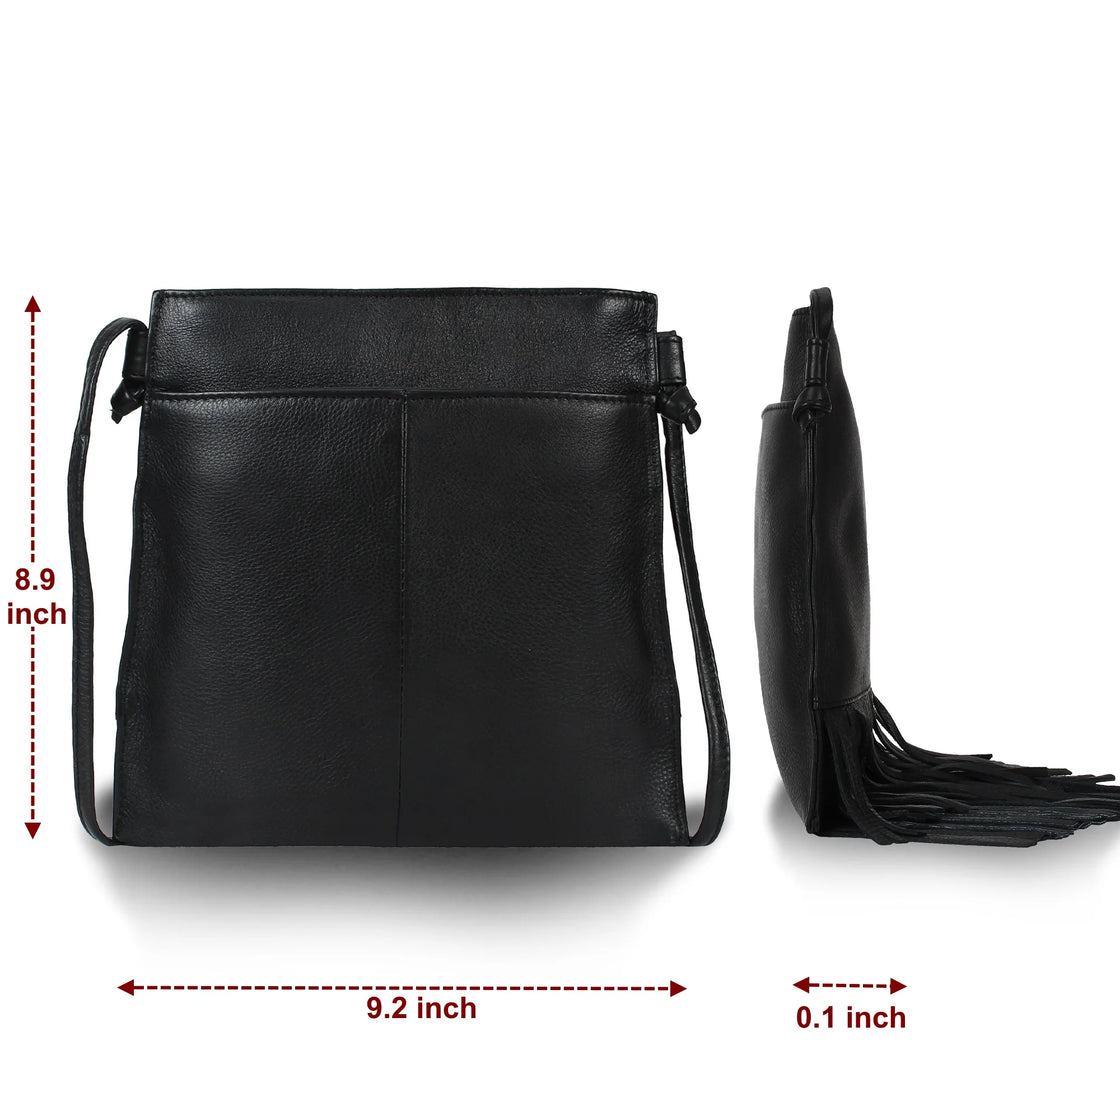 Leather Fringe Hobo Bag for Women (Medium, Black)